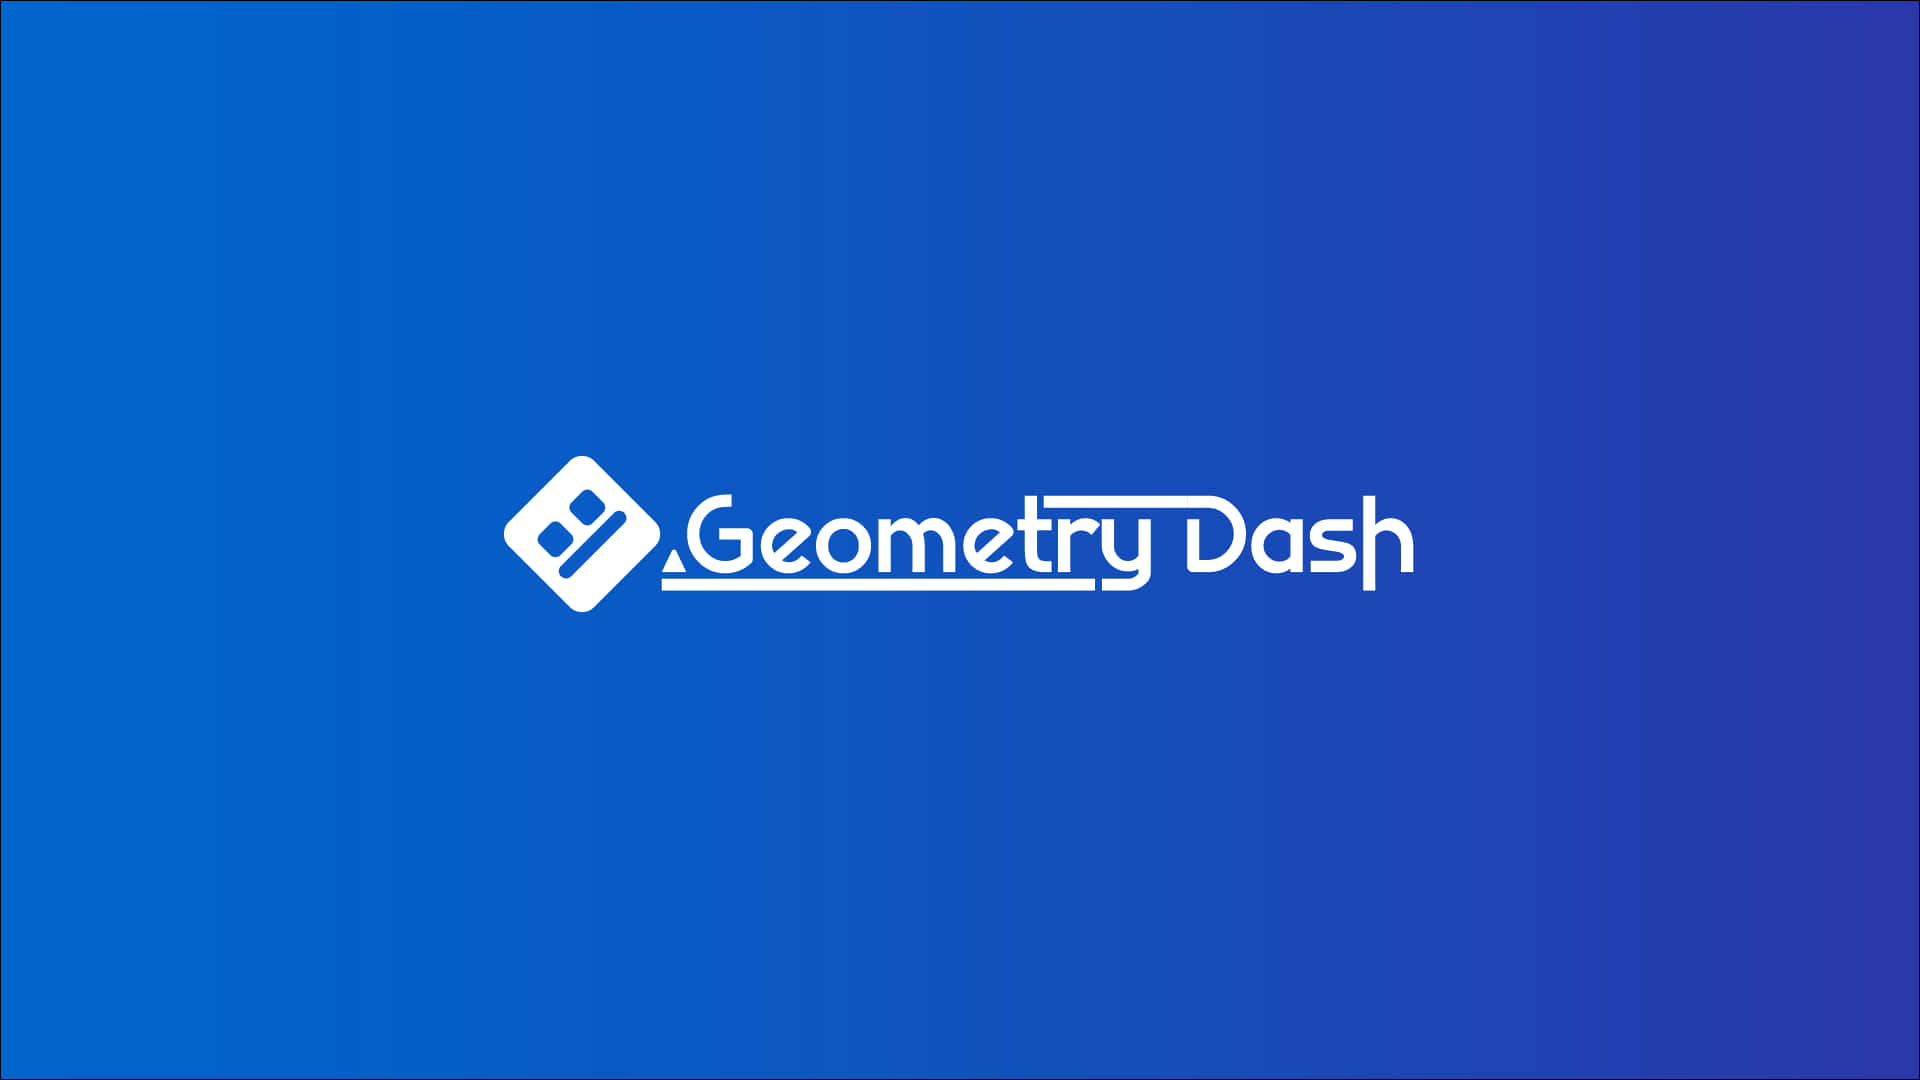 Geometri Dash 1920 X 1080 Wallpaper